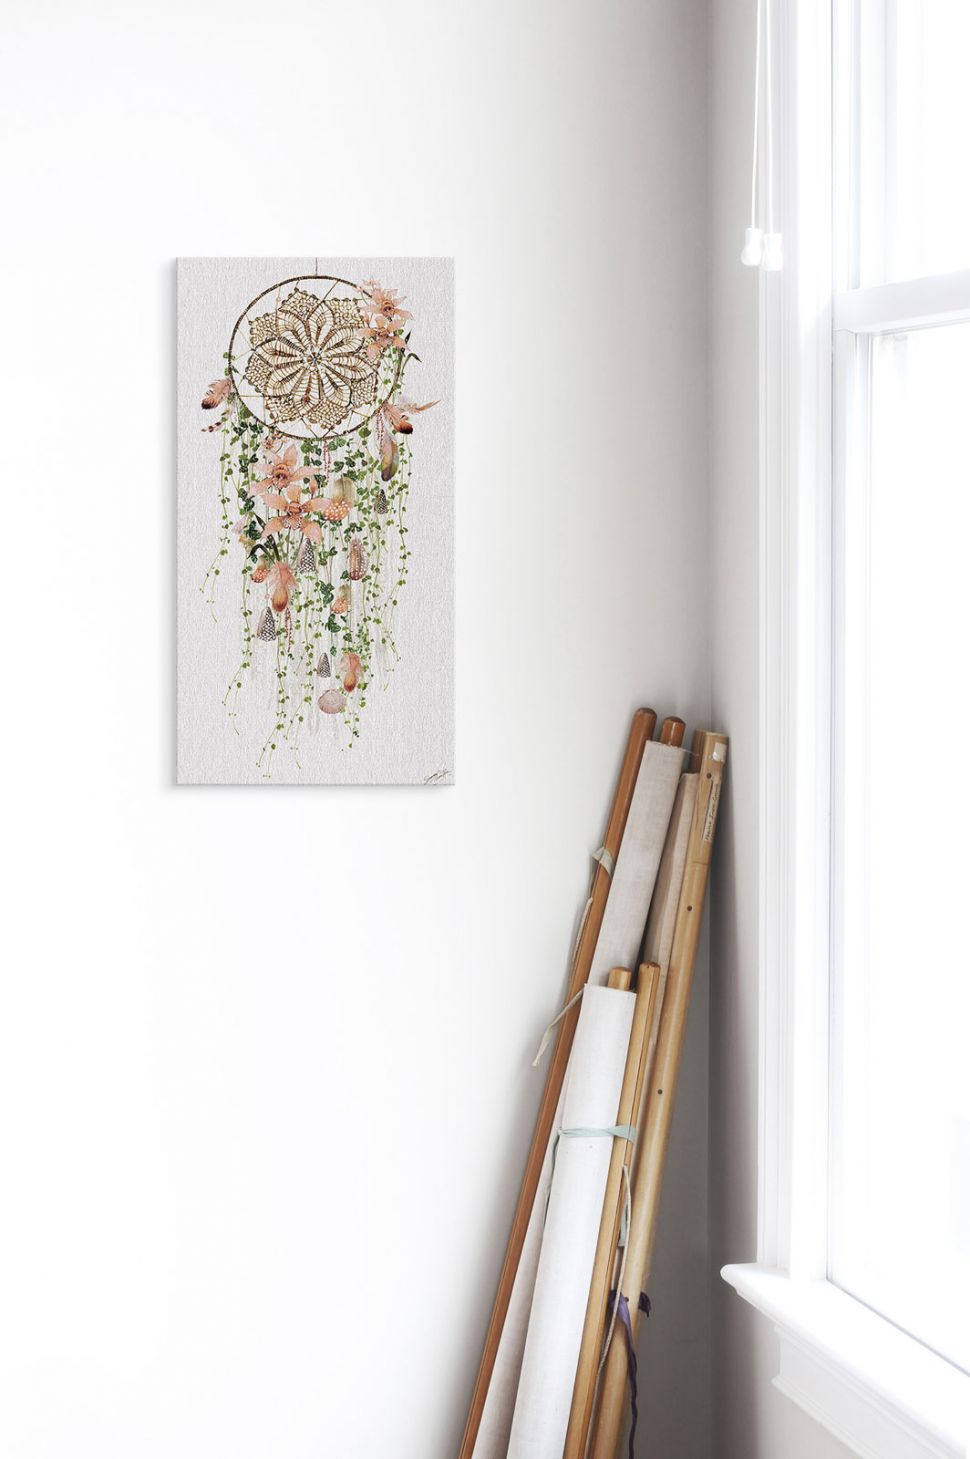 Obraz na płótnie przedstawiający kwiecisty łapacz snów powieszony na białej ścianie